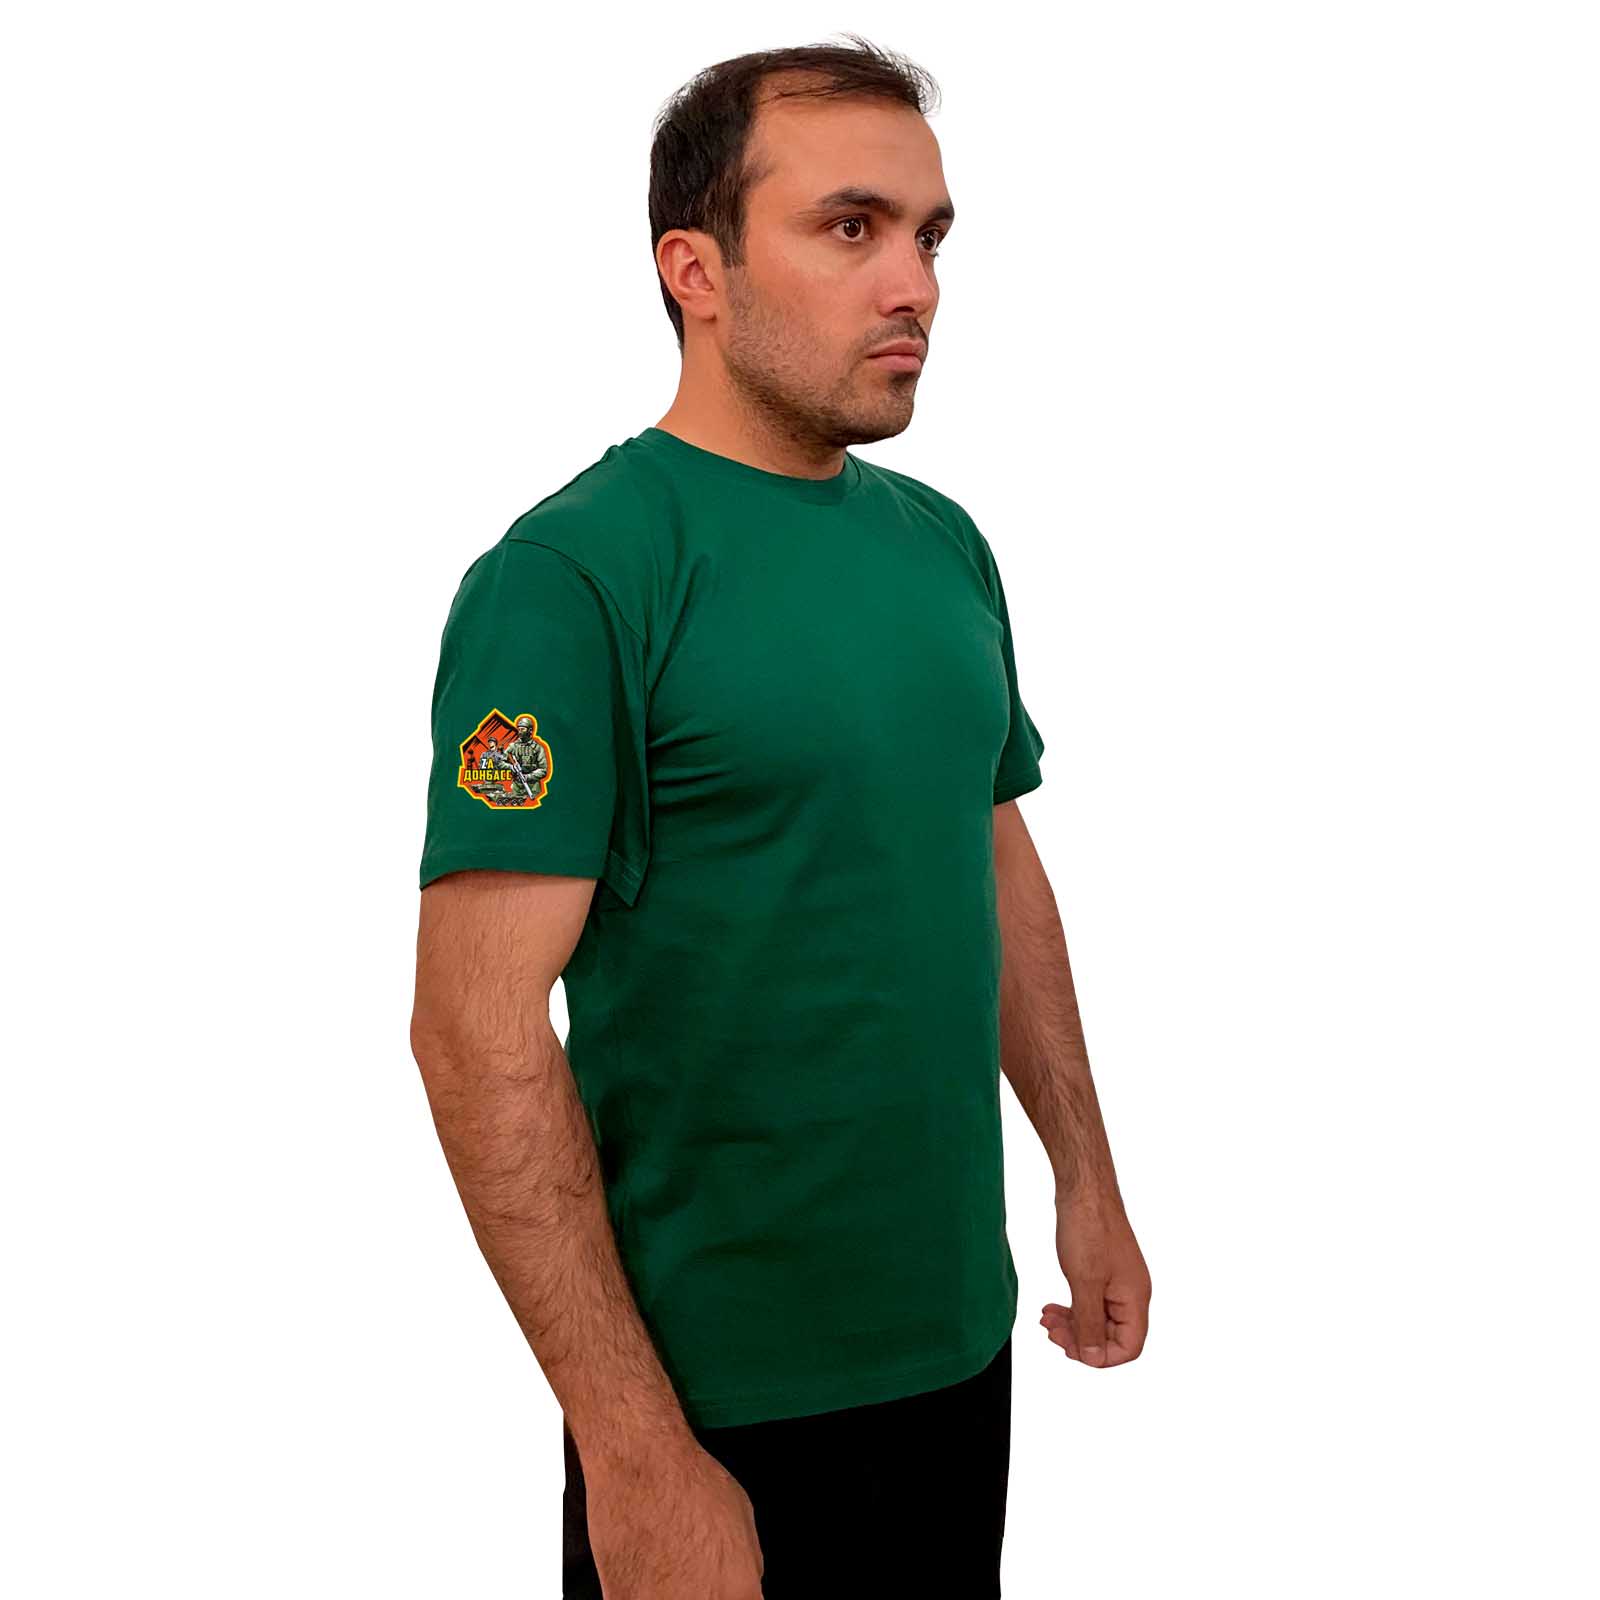 Зелёная футболка с термоаппликацией "Zа Донбасс" на рукаве